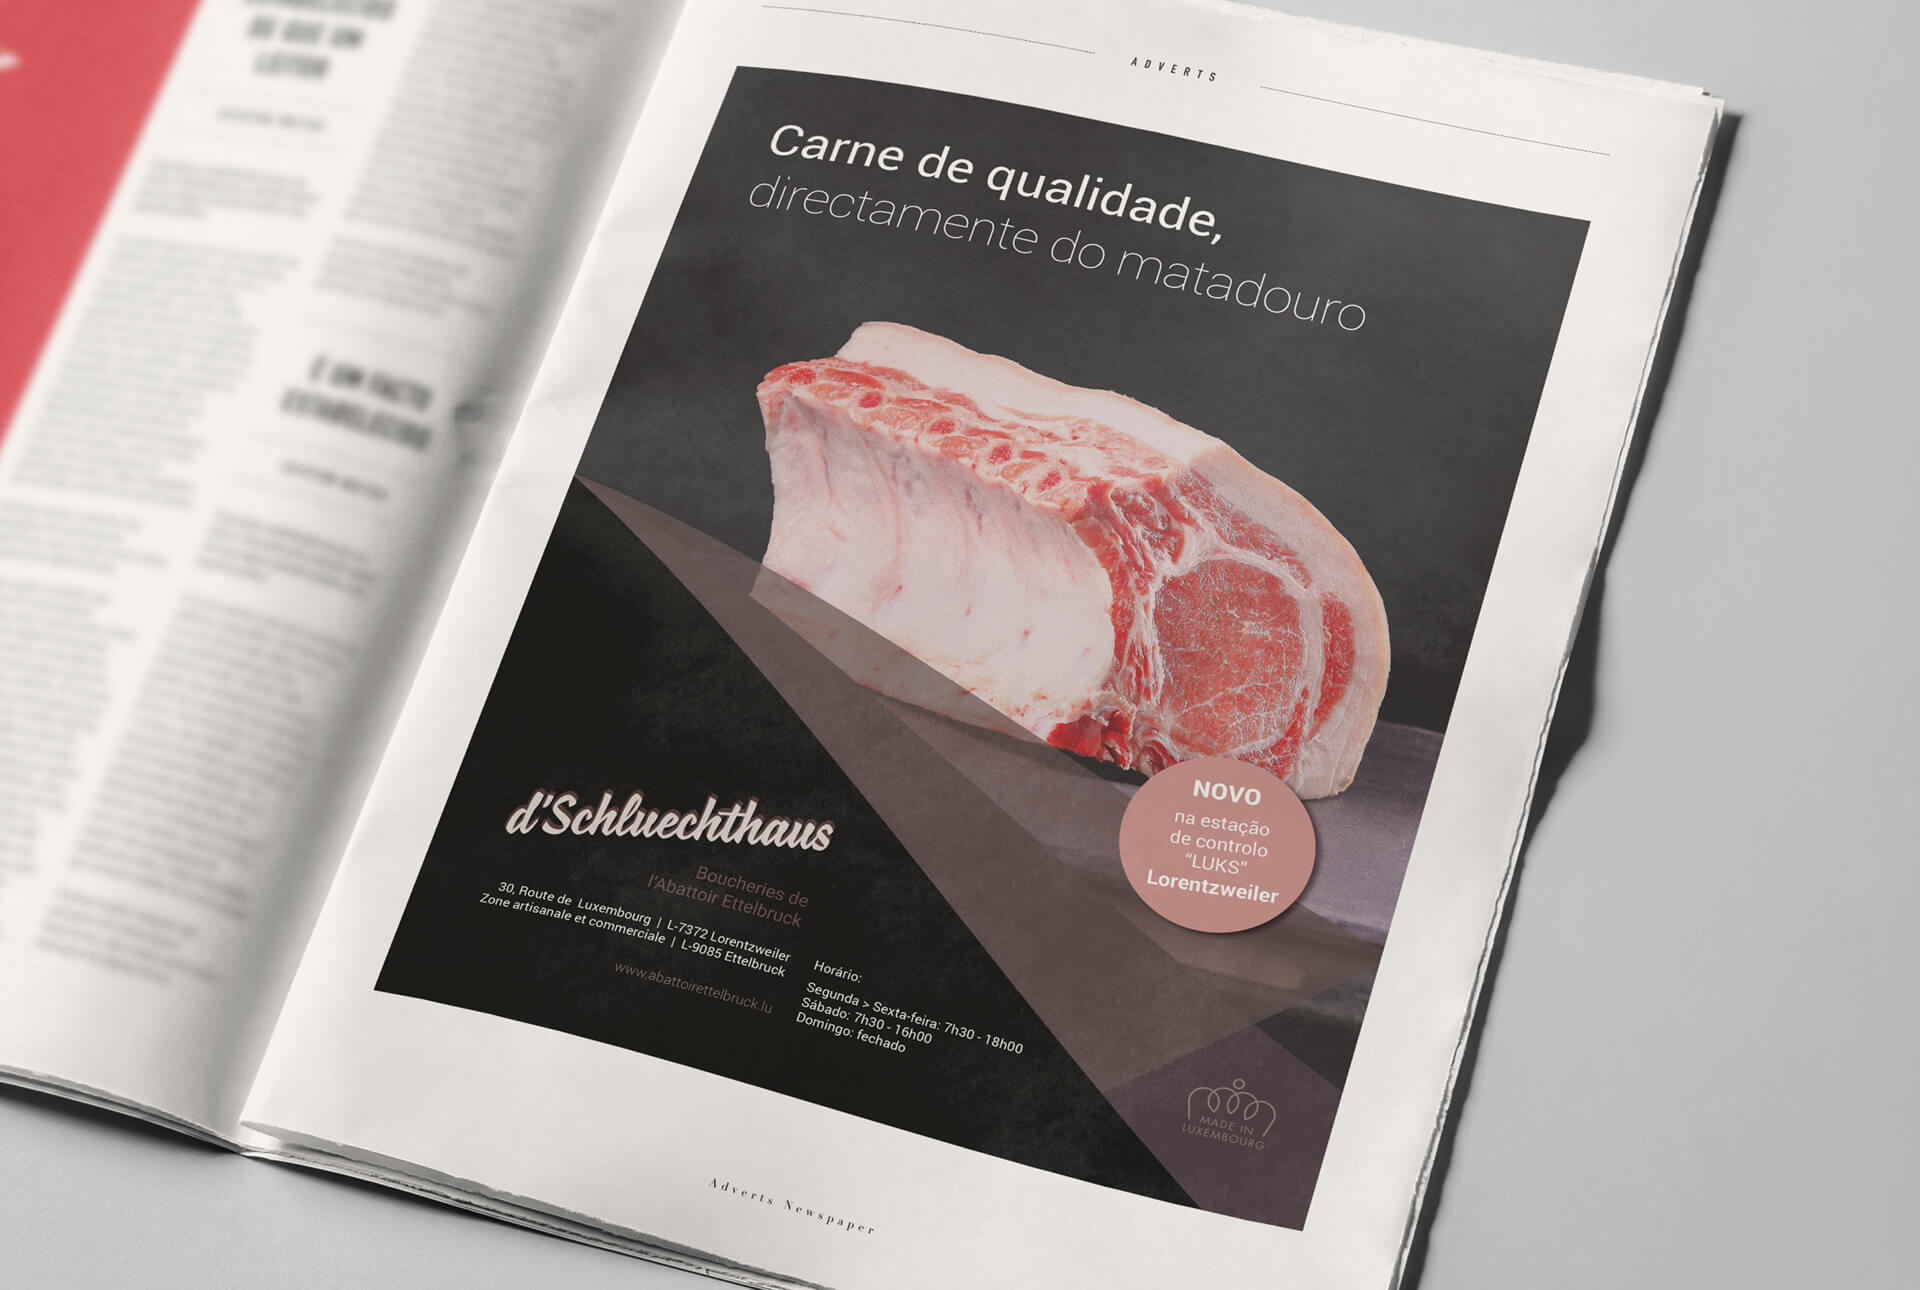 Publicité pour d’Schluechthaus (boucheries) à destination de la population portugaise